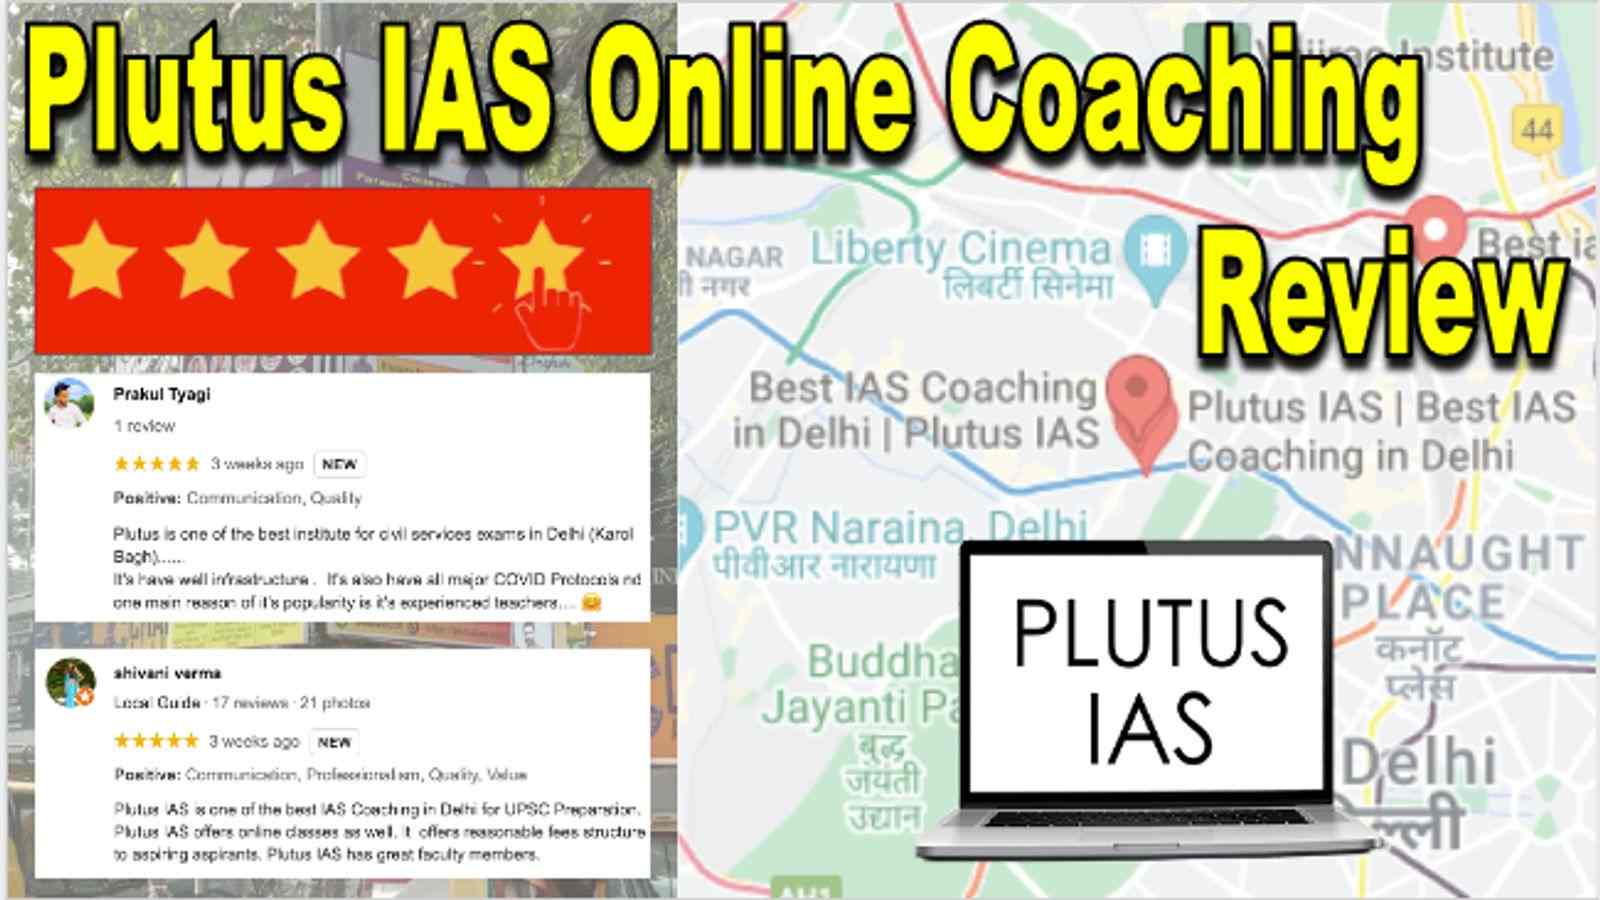 Plutus IAS Online Coaching KolkataReview